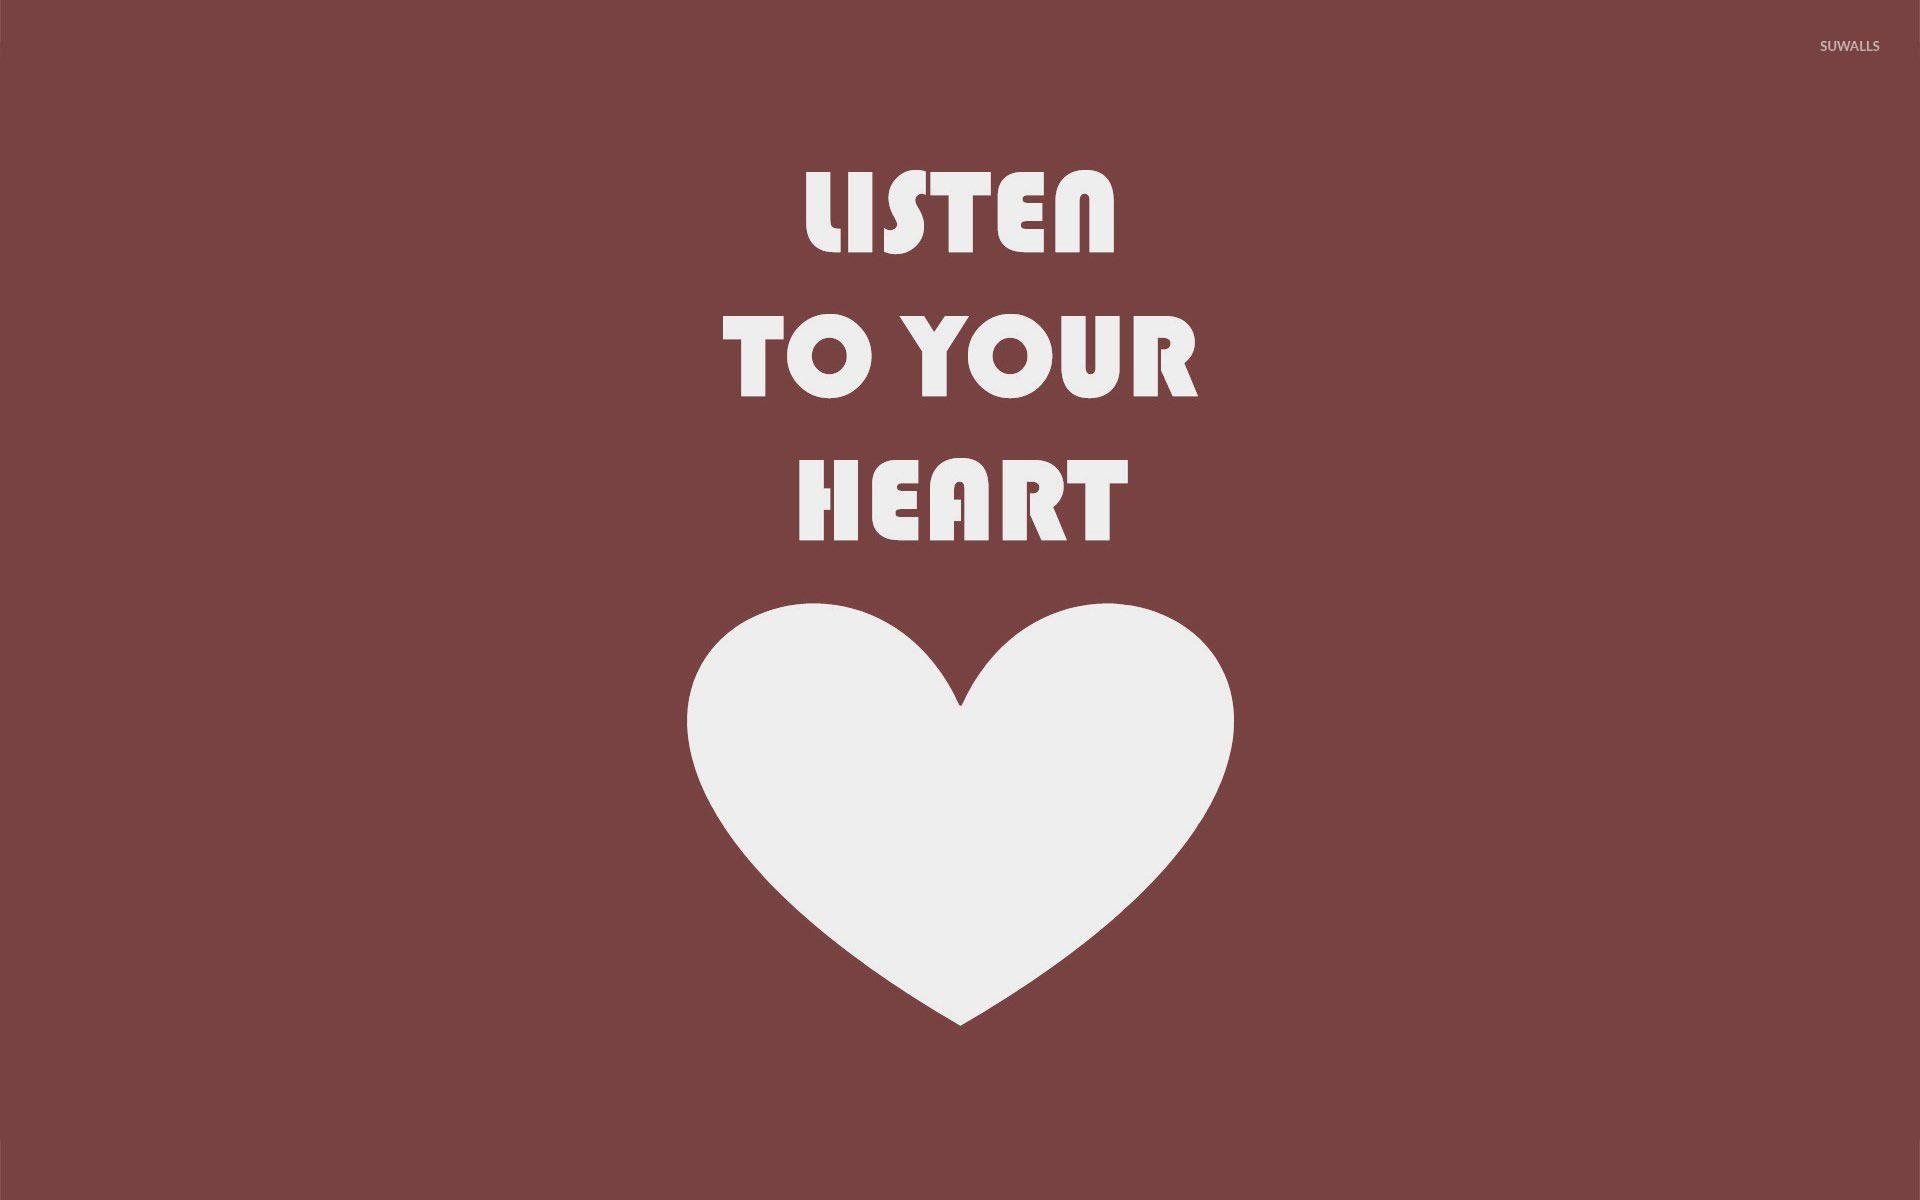 Listen to your heart wallpaper wallpaper